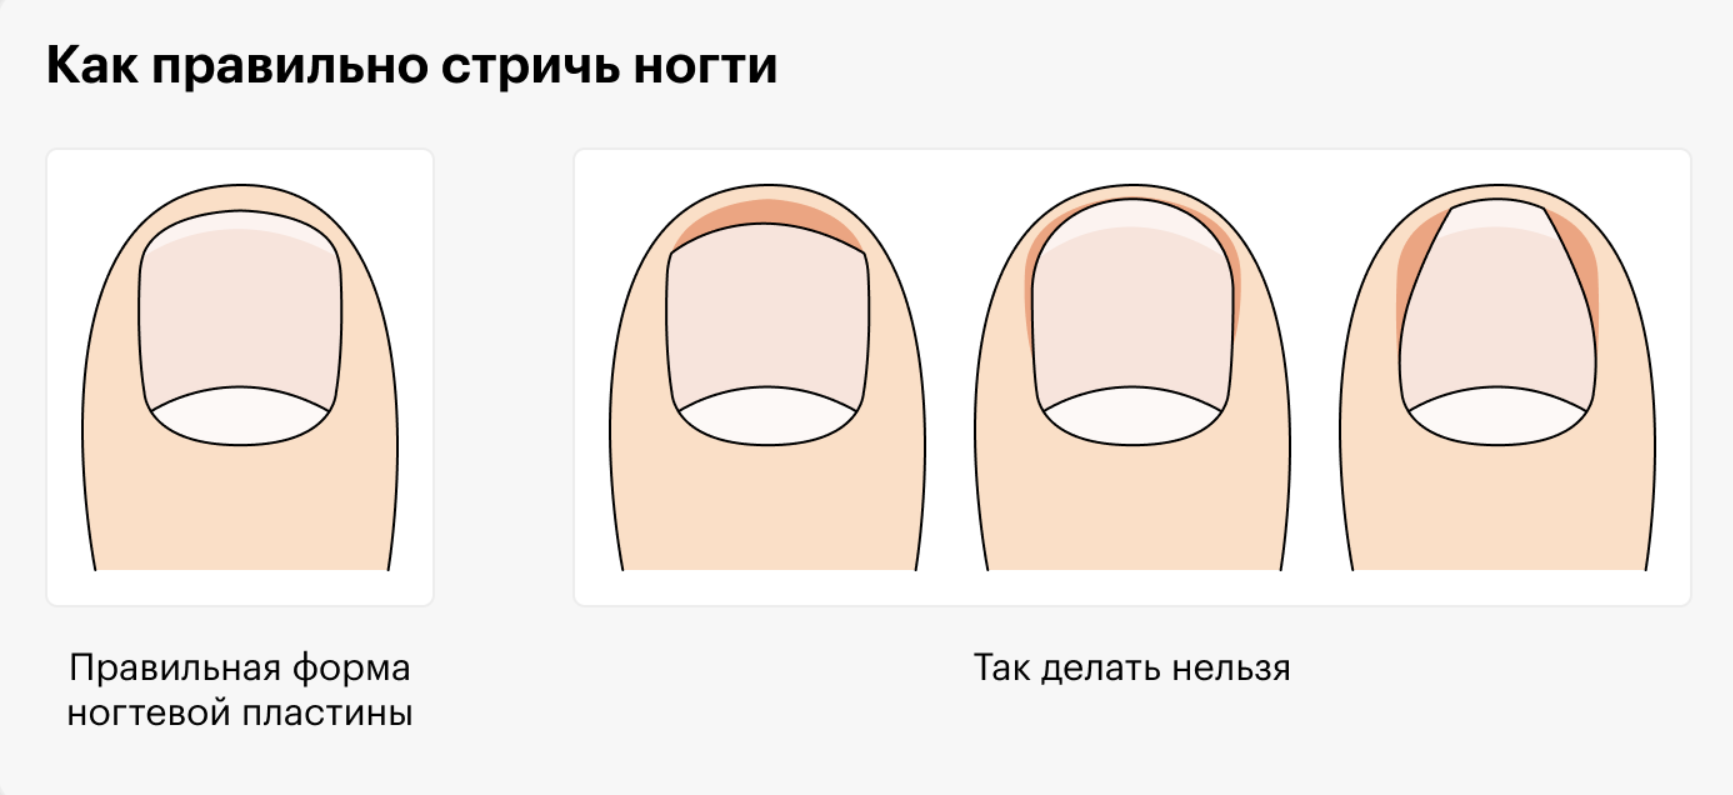 Как подрезать ногти на ногах правильно